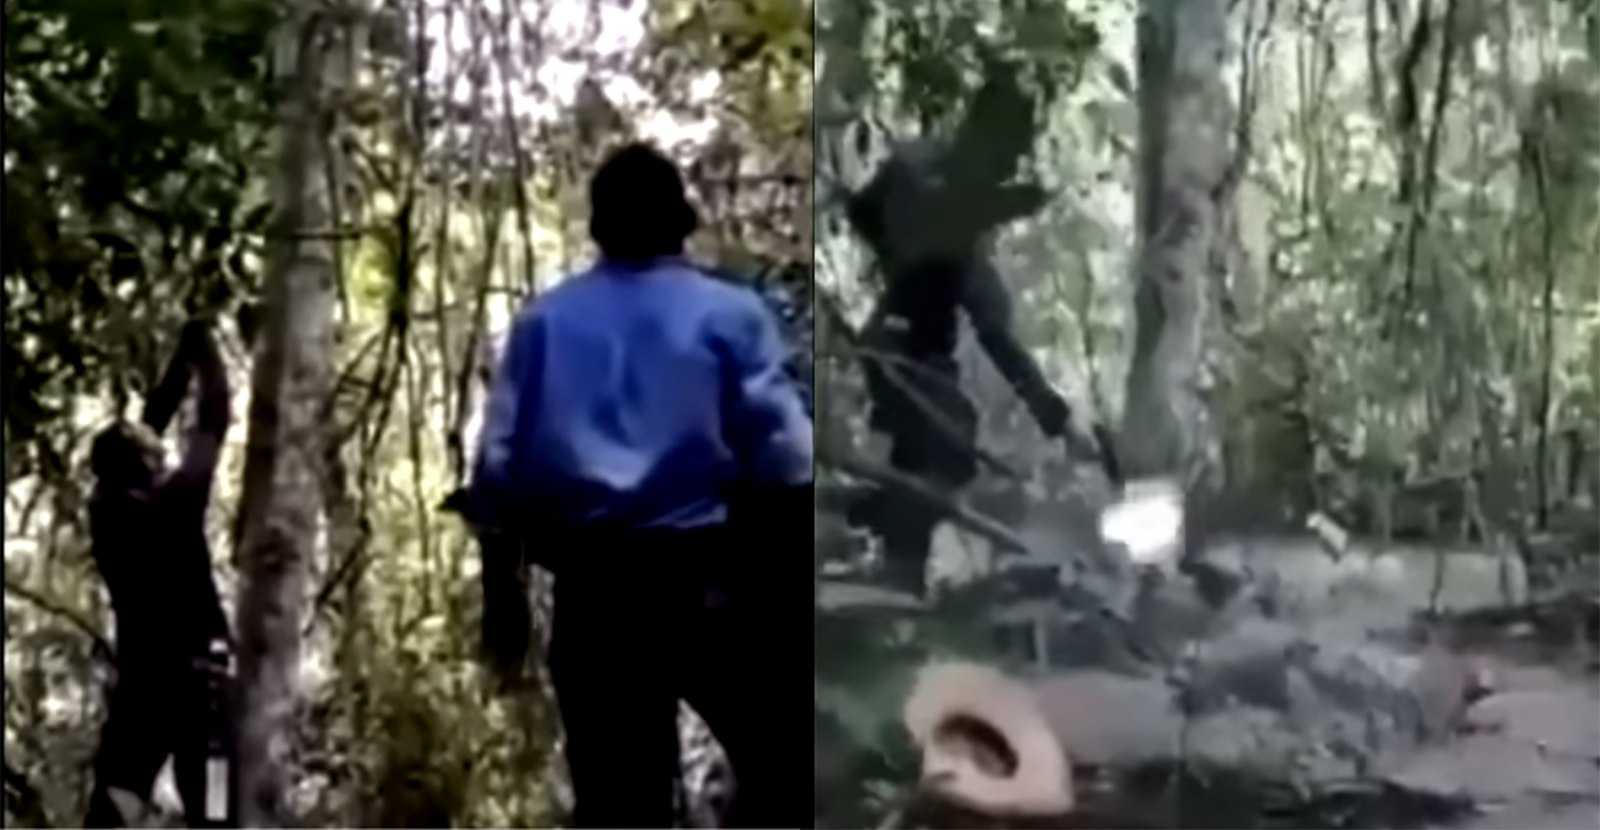 Captura de pantalla del video en donde cazan un jaguar. La imagen derecha muestra el momento cuando el cazador derriba al felino de un árbol y la imagen de la derecha cuando otro lo remeta con una pistola.